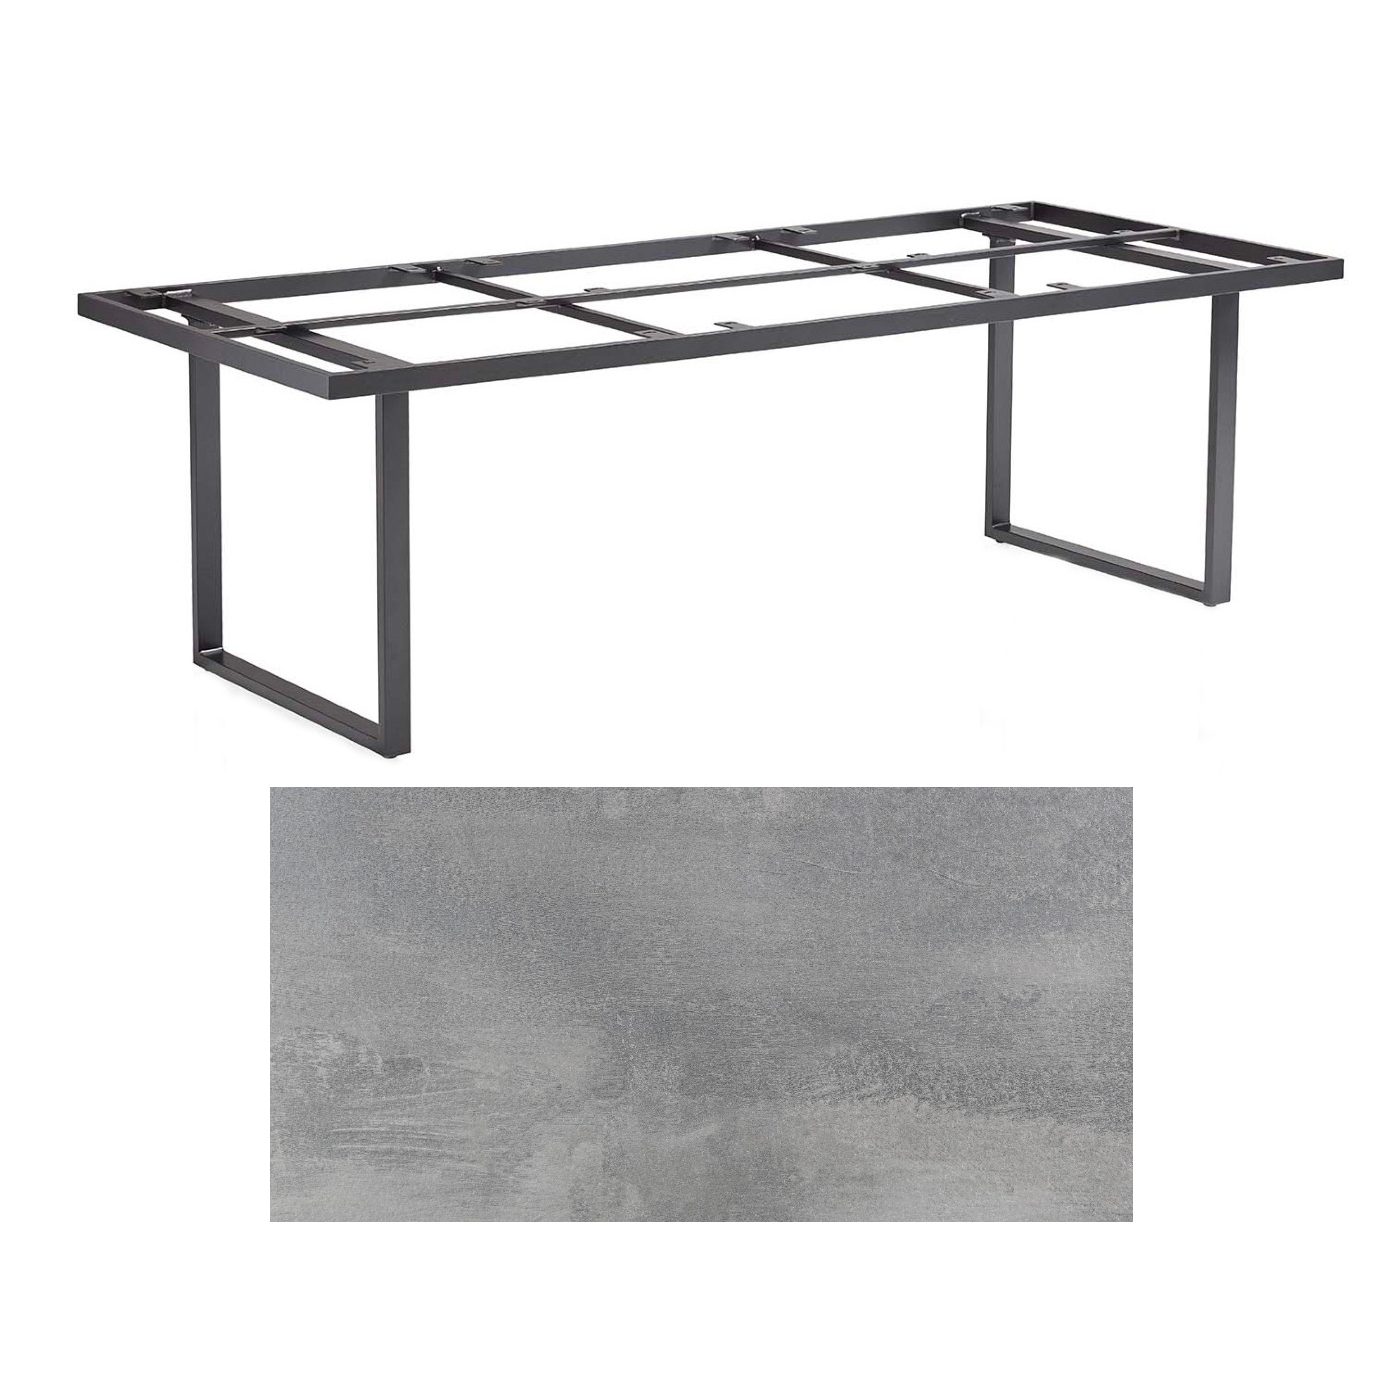 Kettler "Skate" Gartentisch Casual Dining, Gestell Aluminium anthrazit, Tischplatte HPL silber-grau, 220x95 cm, Höhe ca. 68 cm